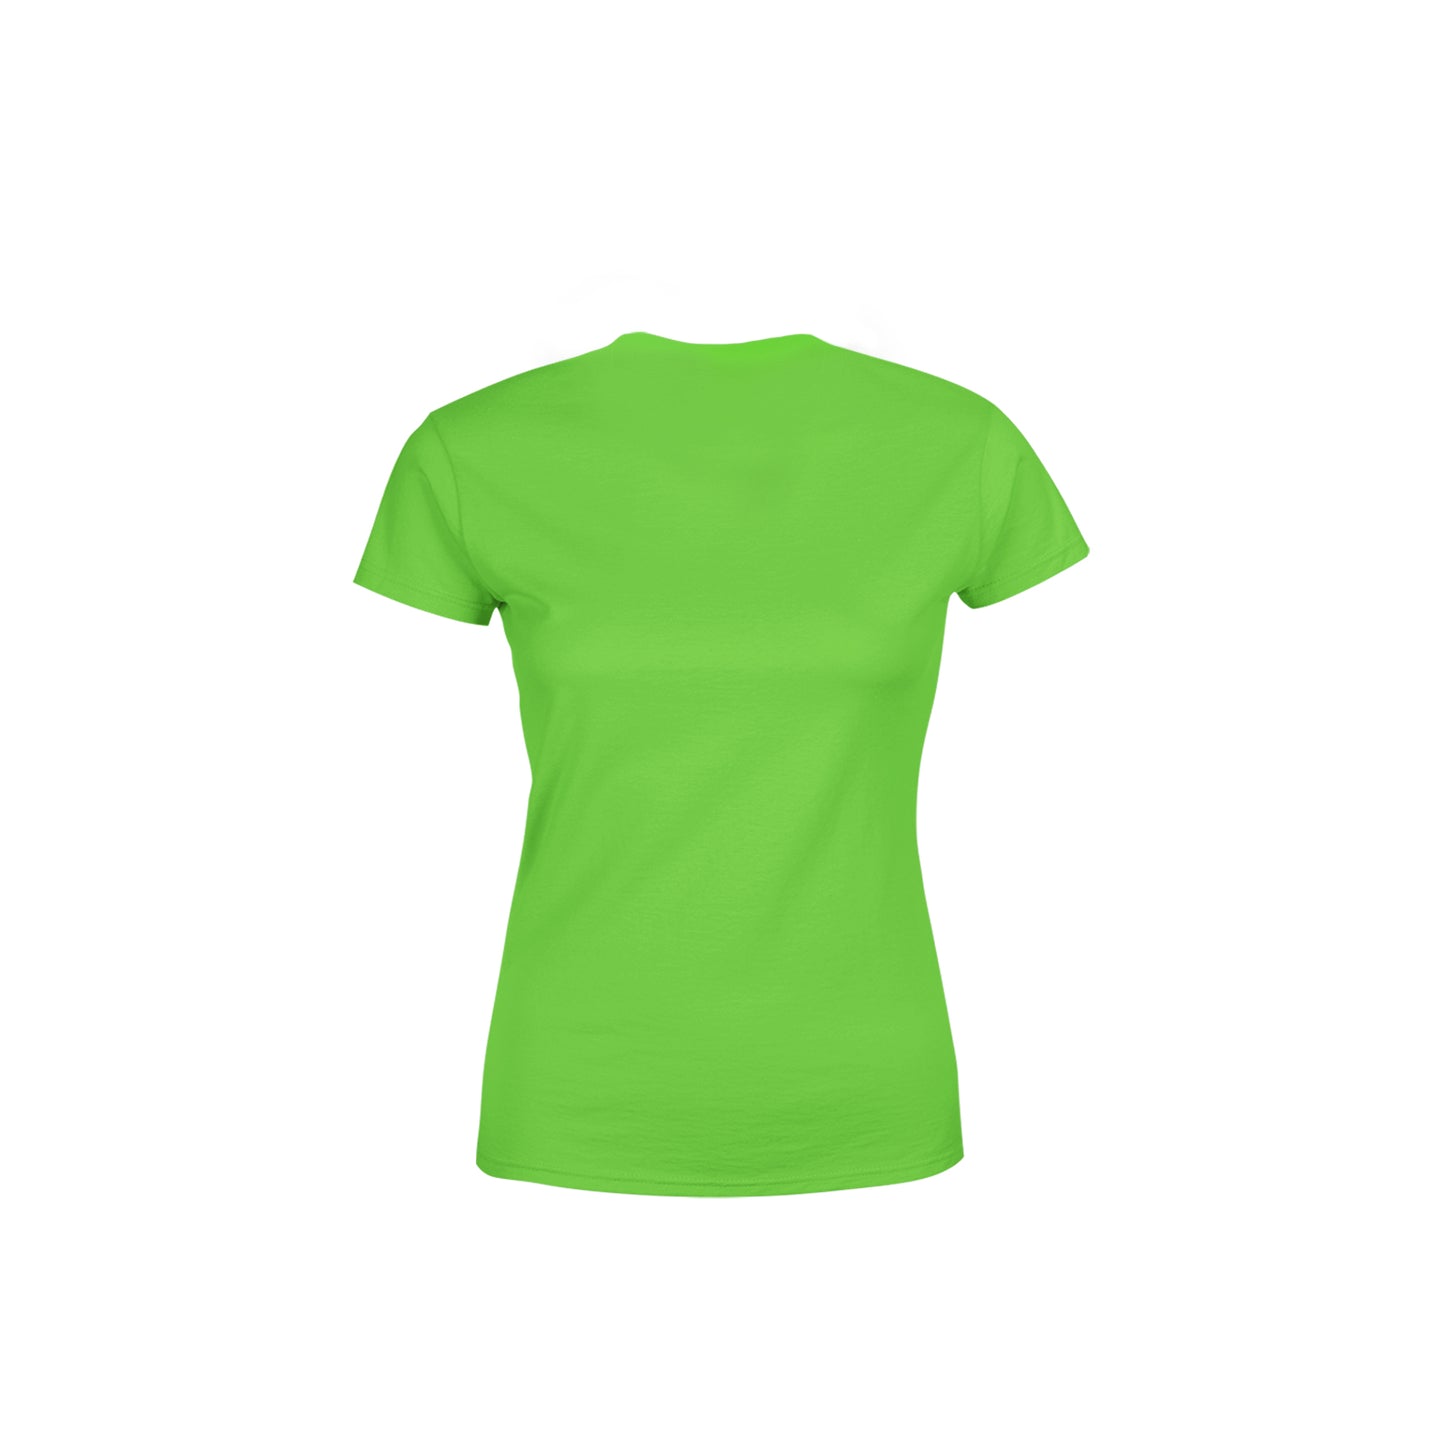 53 Number Women's T-Shirt (Liril Green)